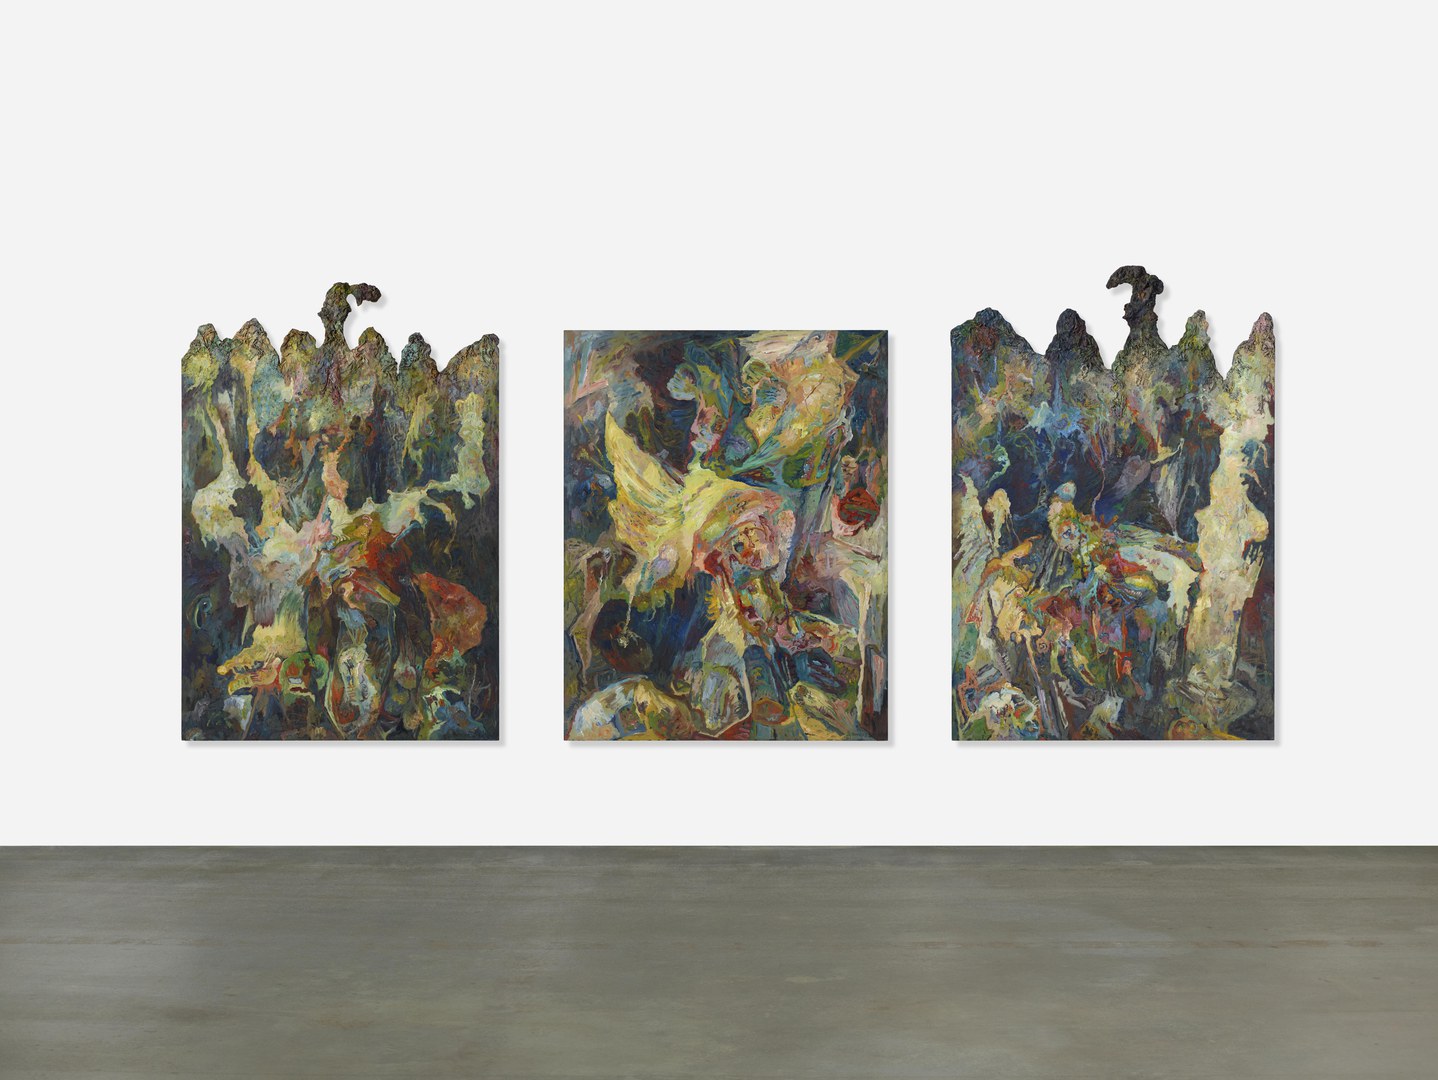 Bernard Schultze: Lancelot, 1983, Öl und plastische Elemente auf Leinwand, 220 x 450 cm